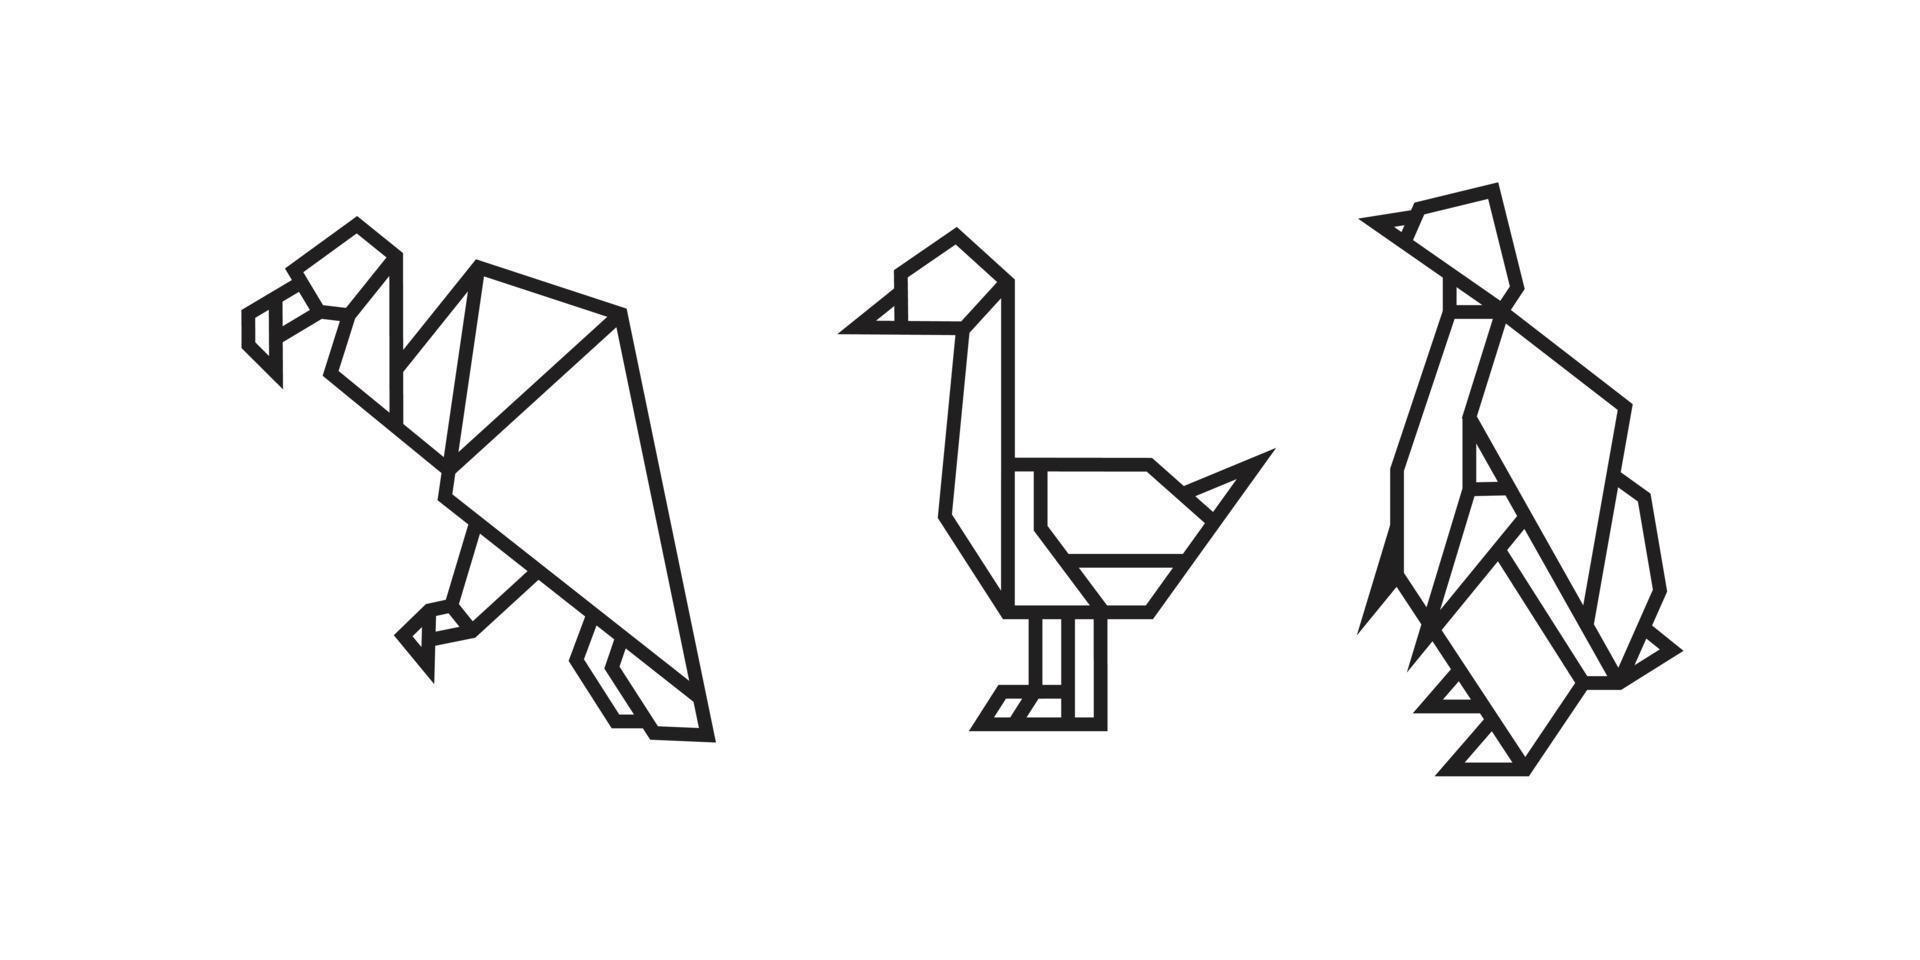 illustrations d'oiseaux dans un style origami vecteur